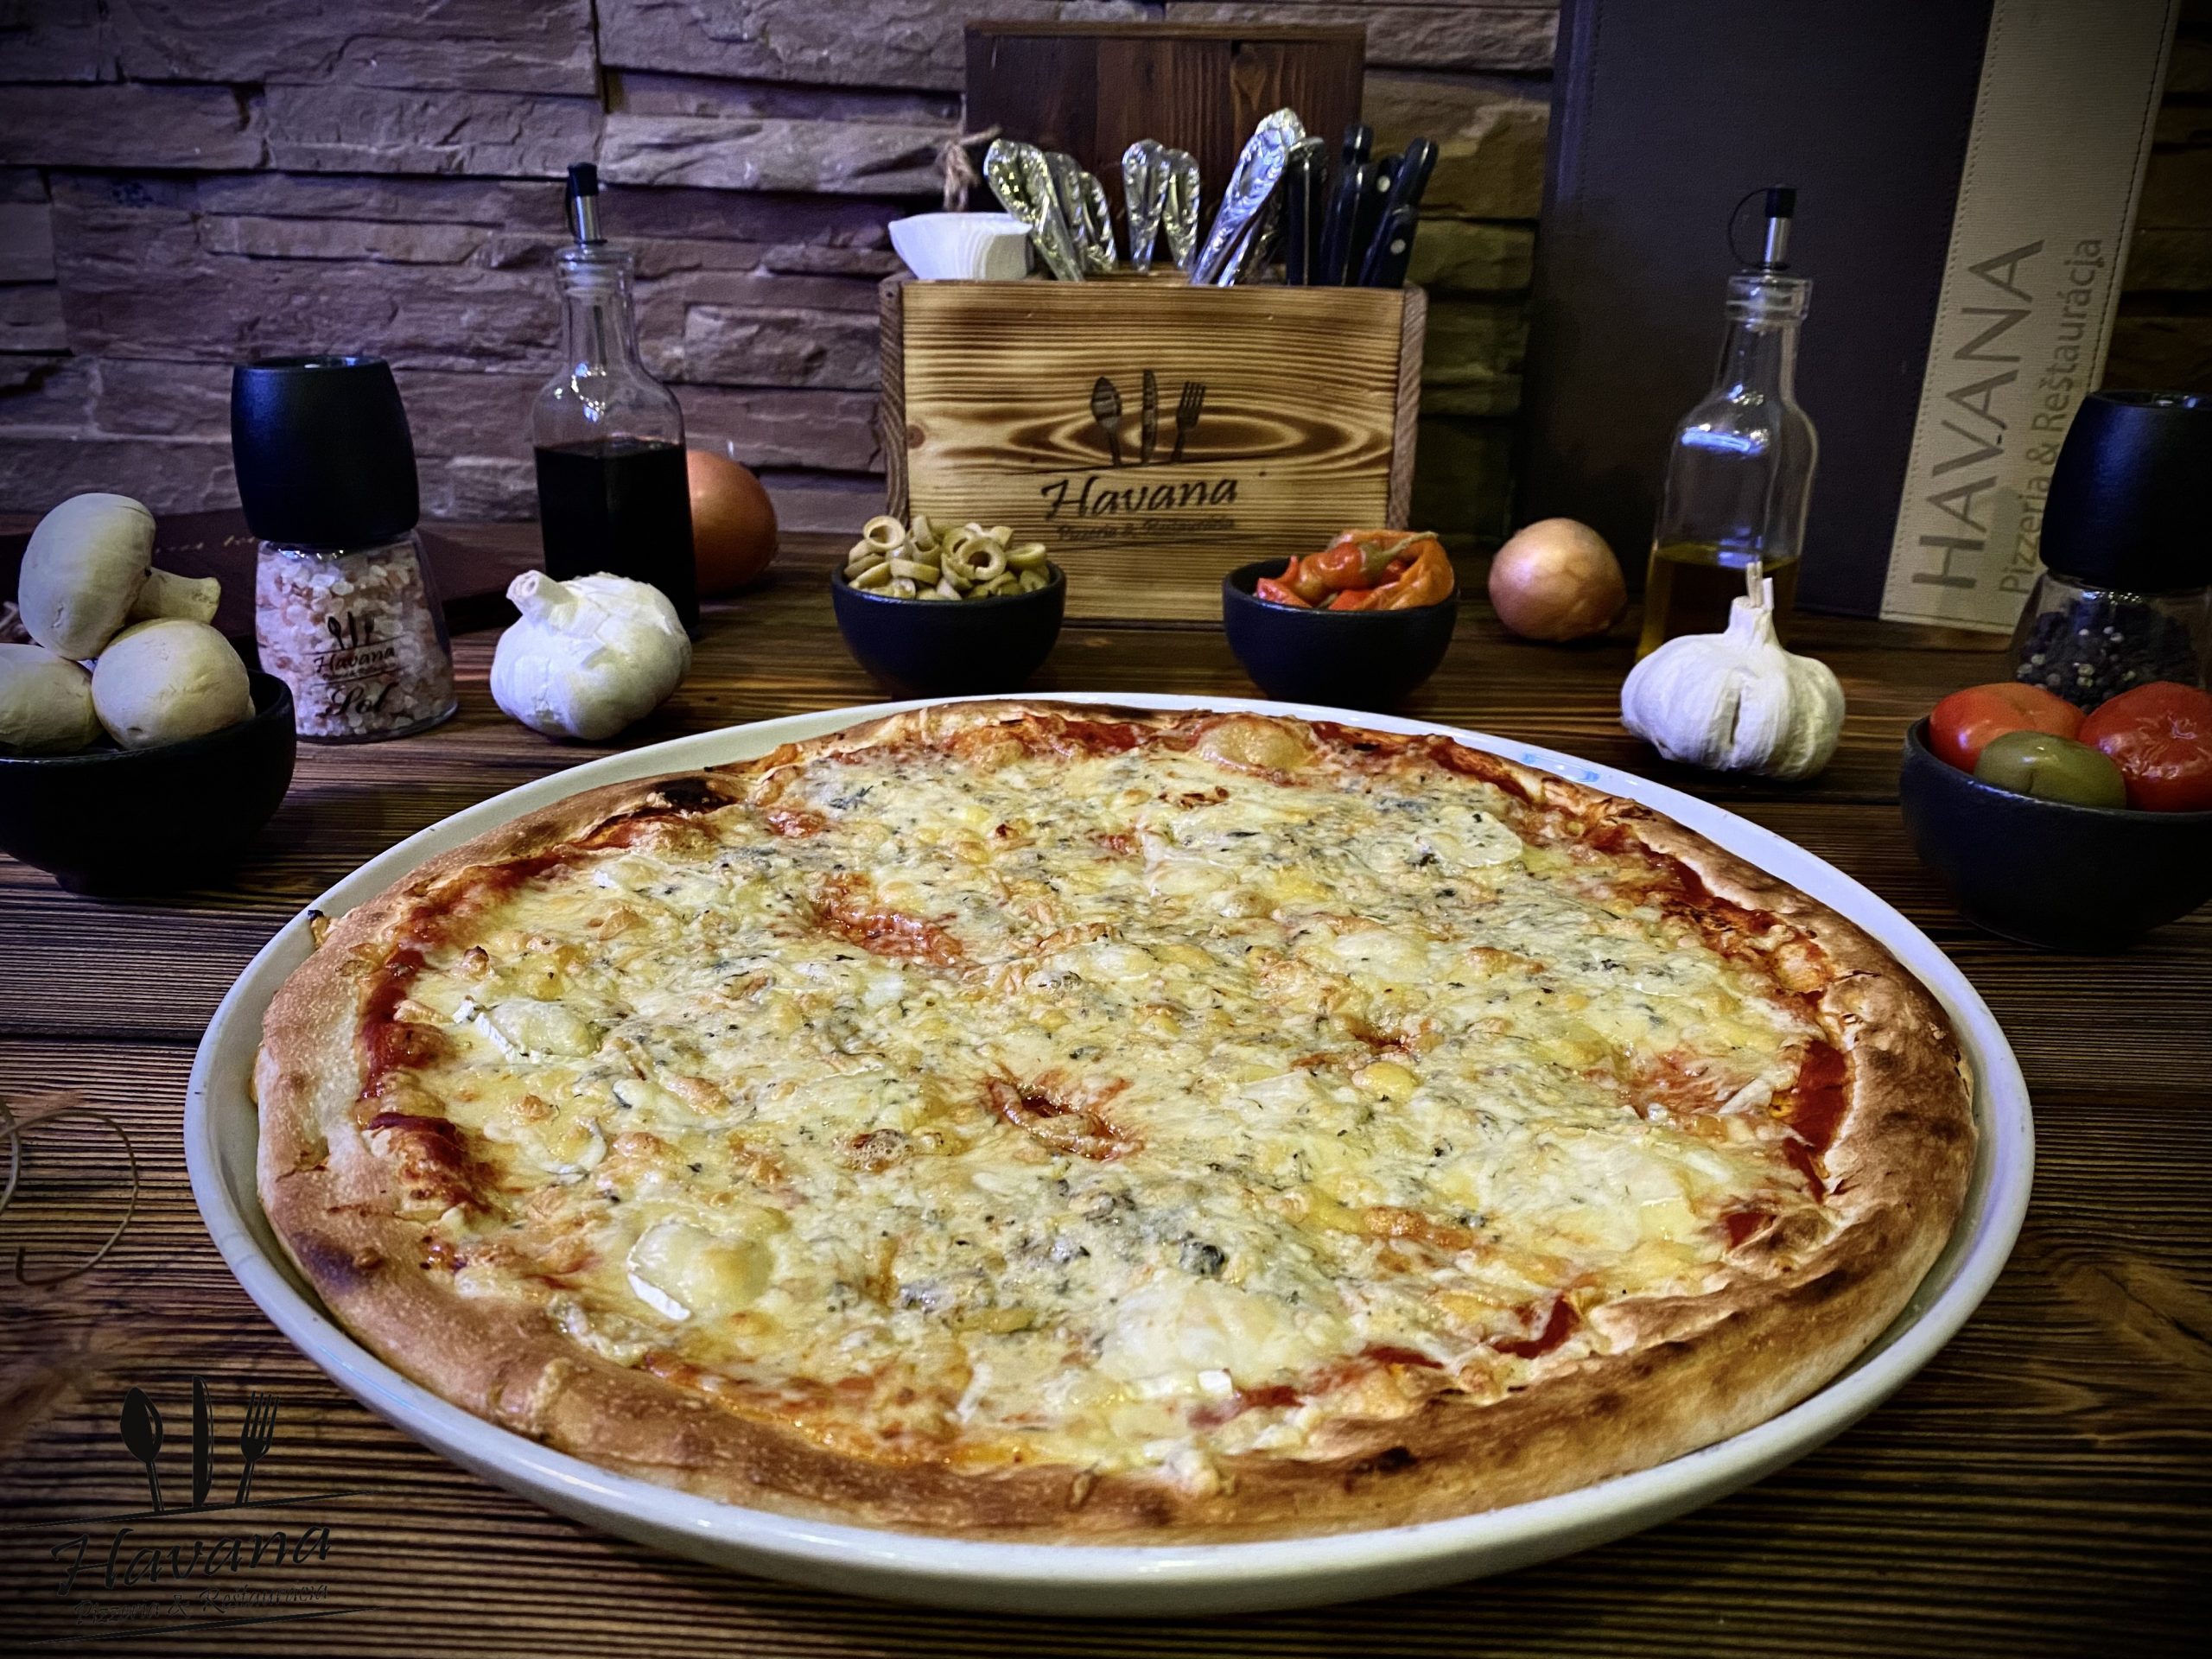 pizza-quatro-formaggi-havana-pizzeria-restauracia